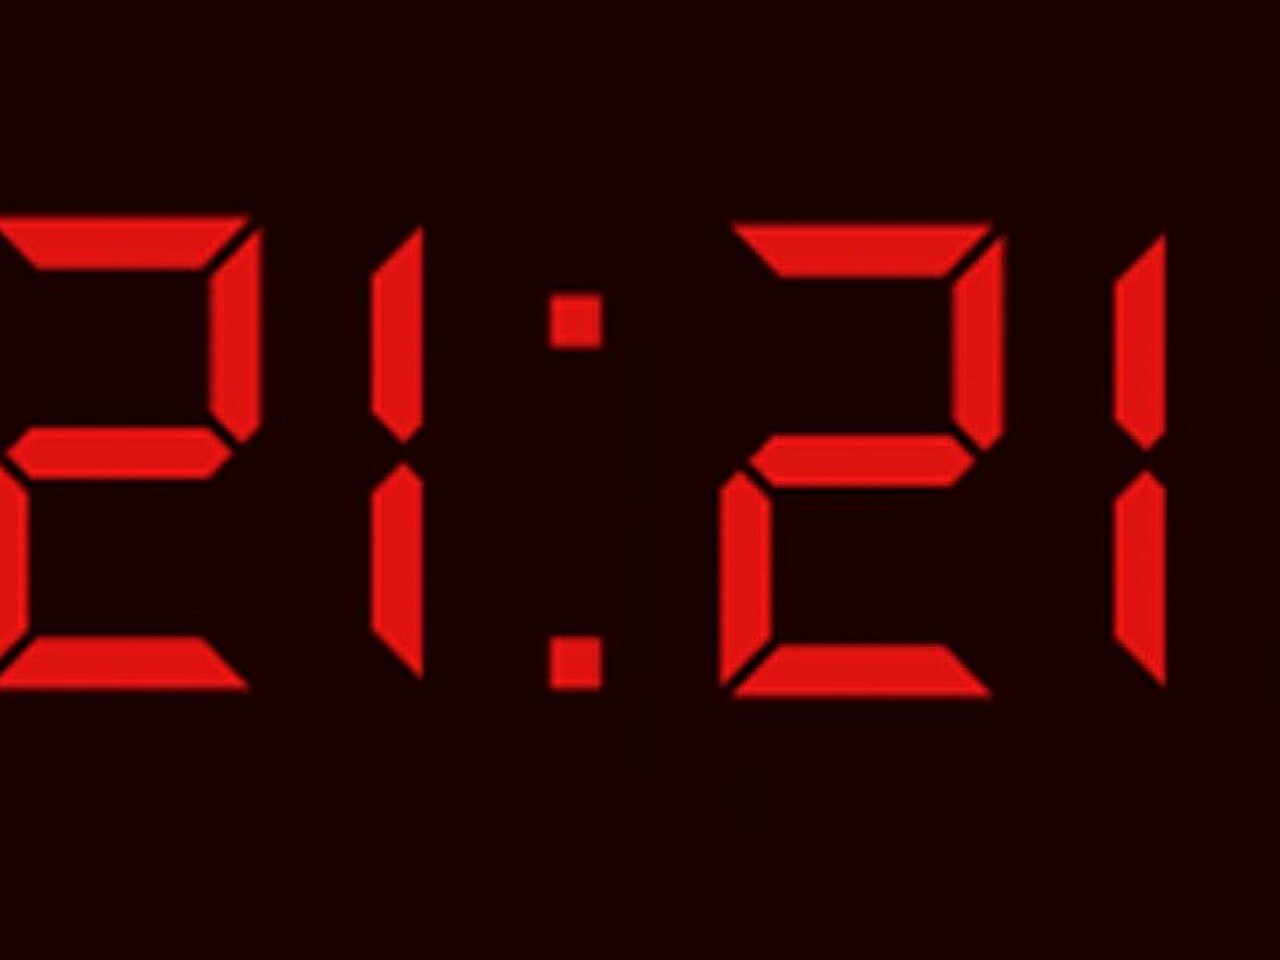 Значение цифр 2121 на часах. Цифры на электронных часах. 11 11 Электронные часы. Первые цифровые часы. Часы повторяющиеся цифры на часах.